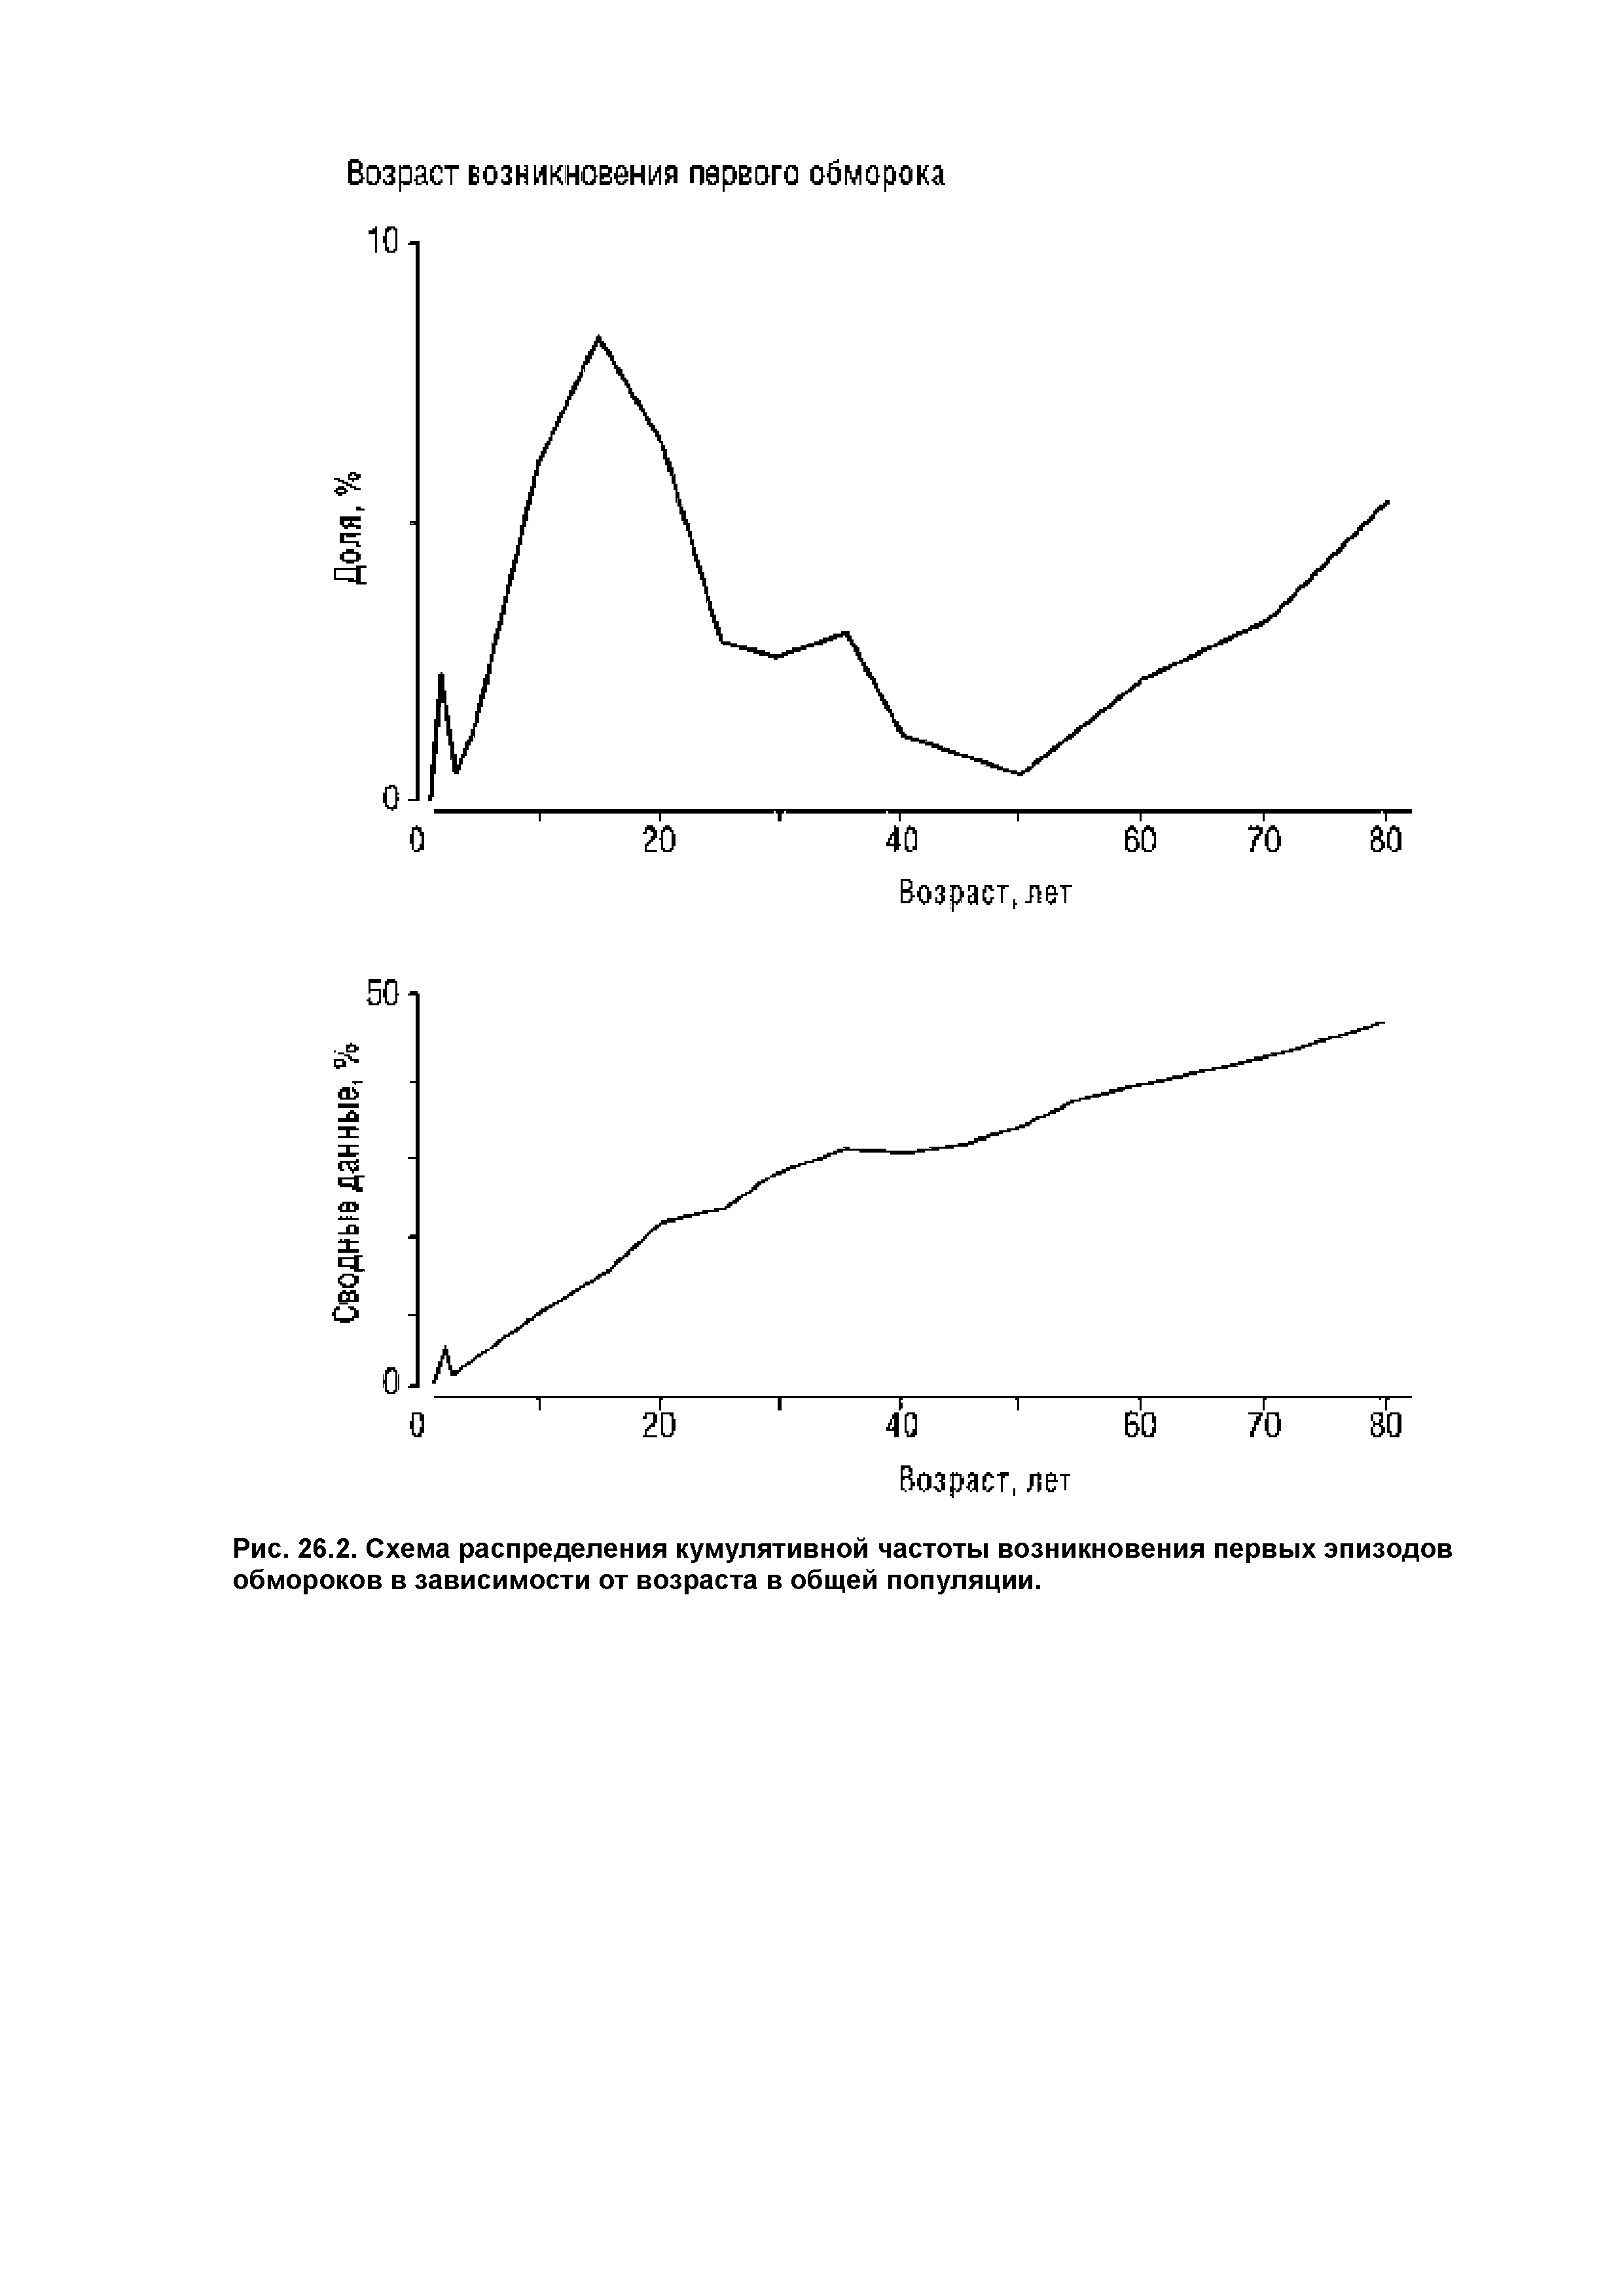 Рис. 26.2. Схема распределения кумулятивной частоты возникновения первых эпизодов обмороков в зависимости от возраста в общей популяции.